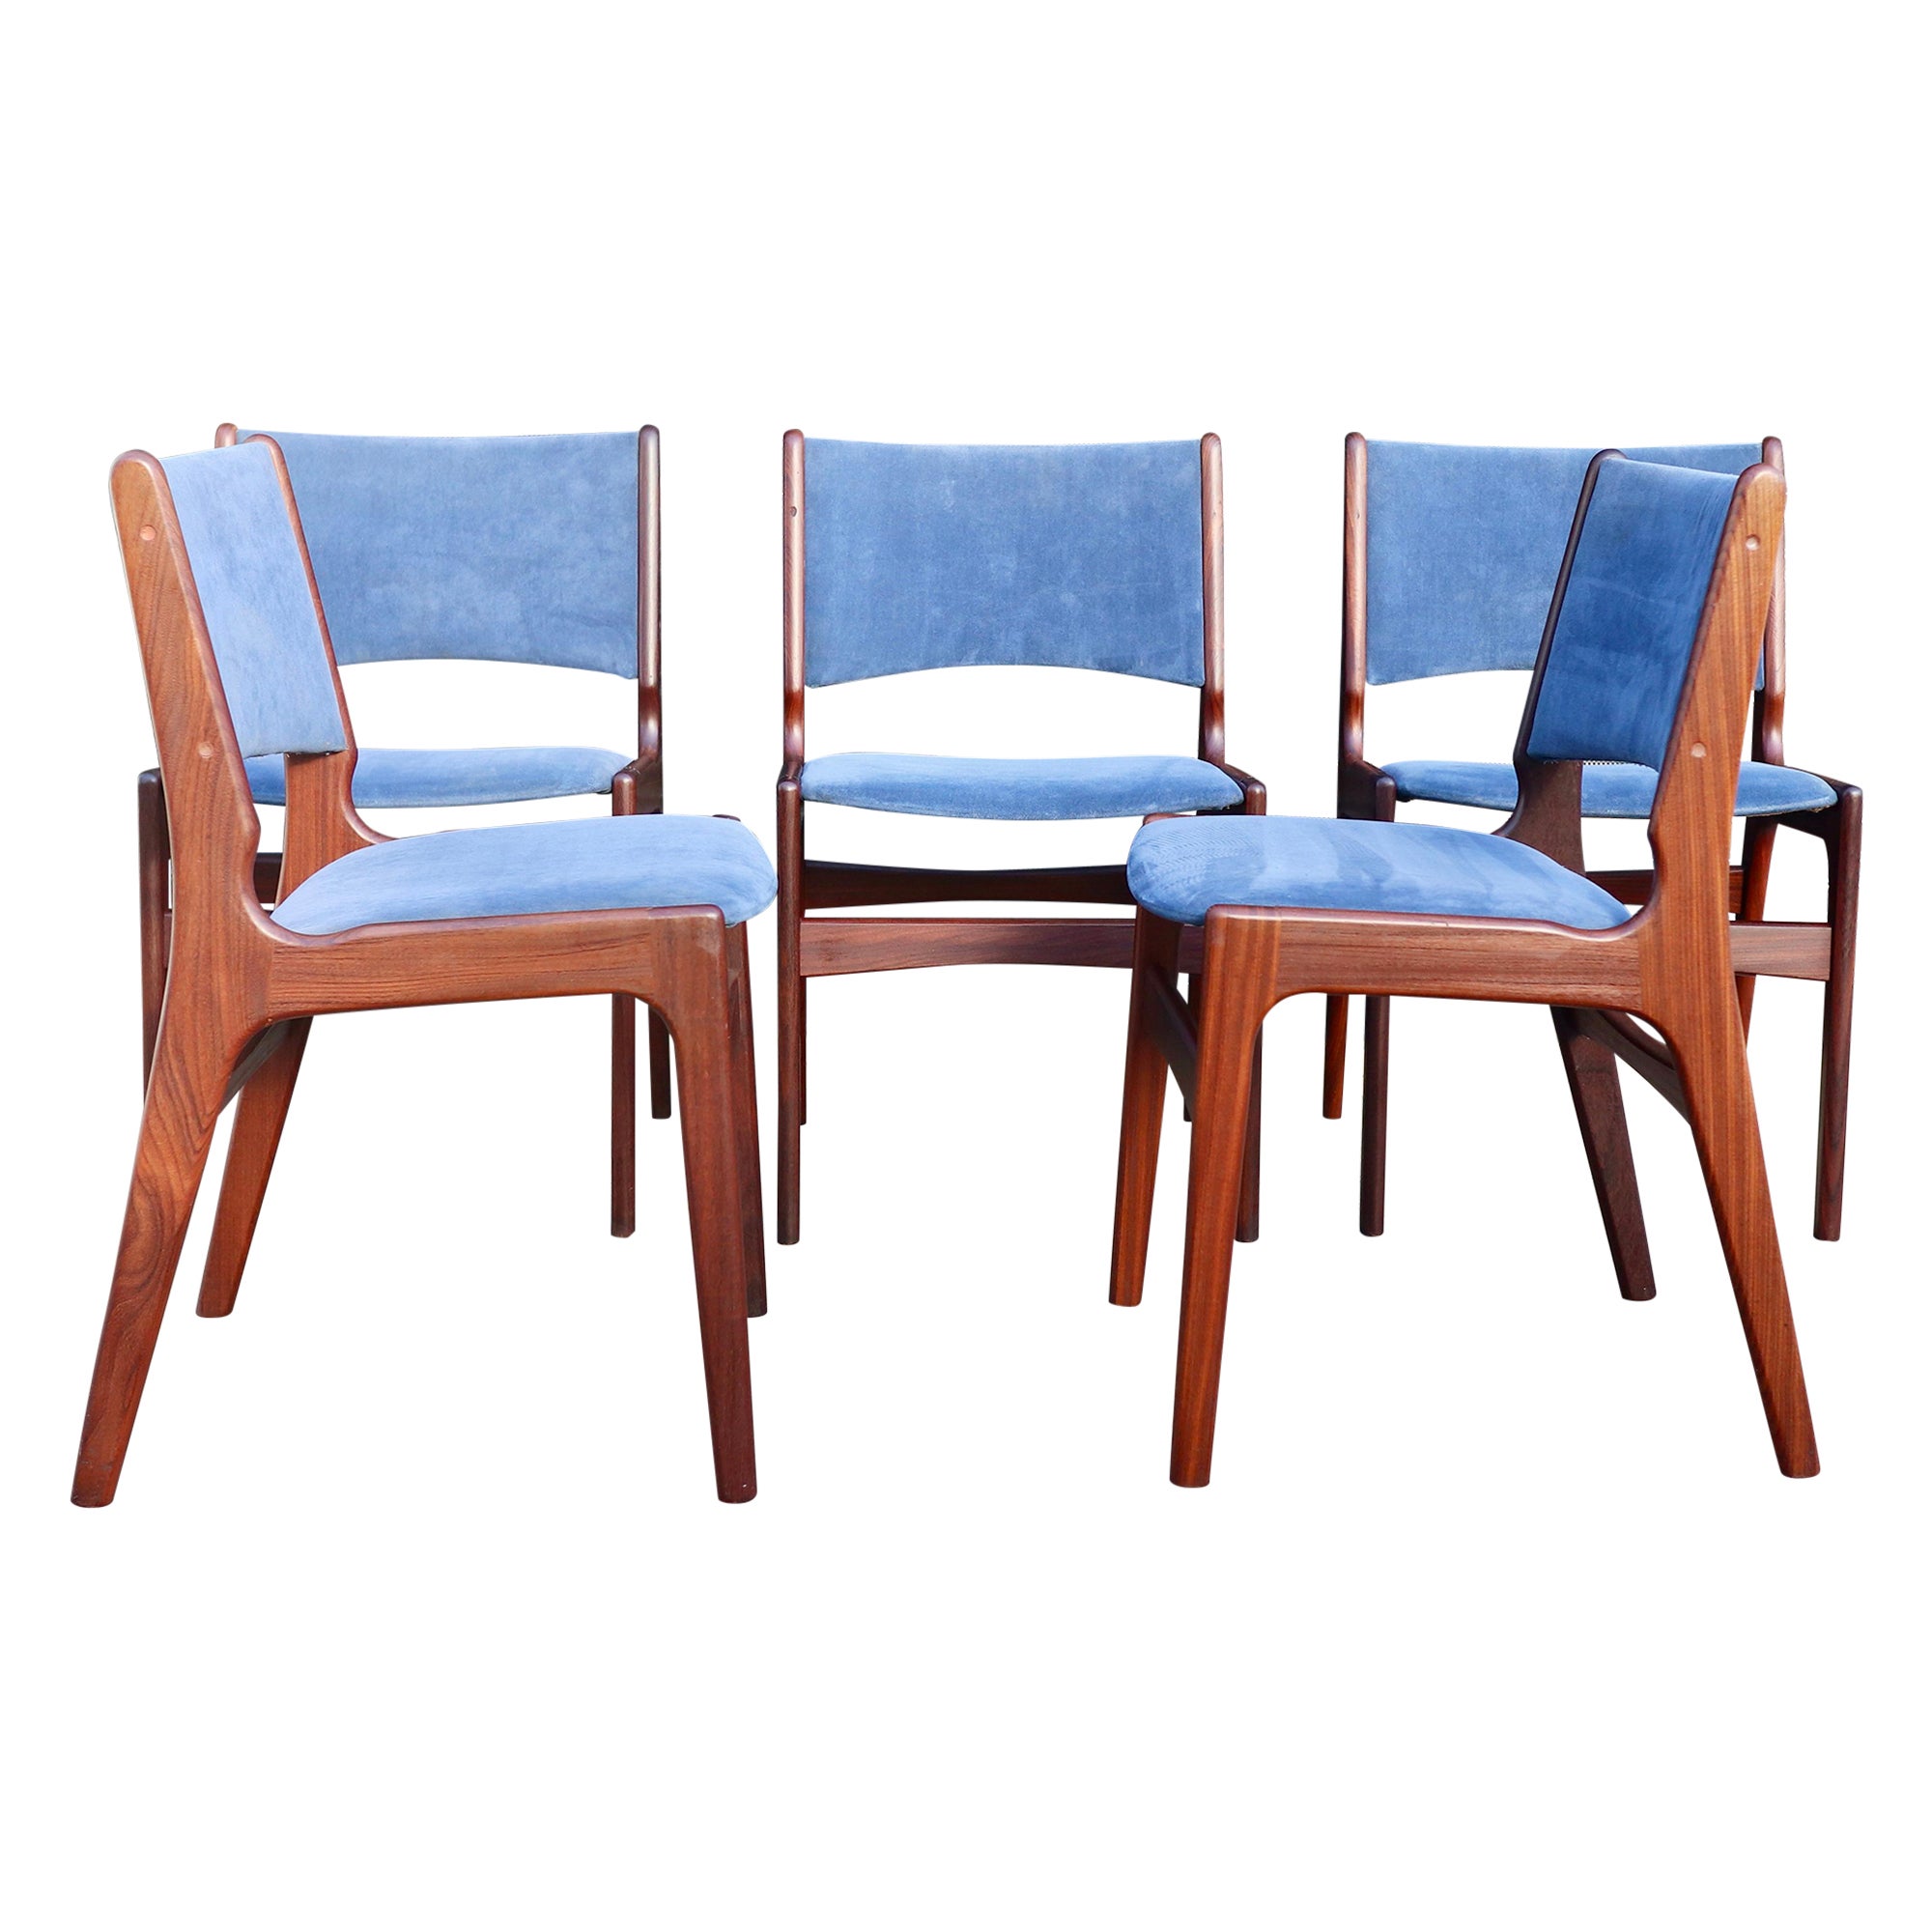 Cinco sillas de comedor danesas de teca Erik Buch "Model 89" de los años 60 